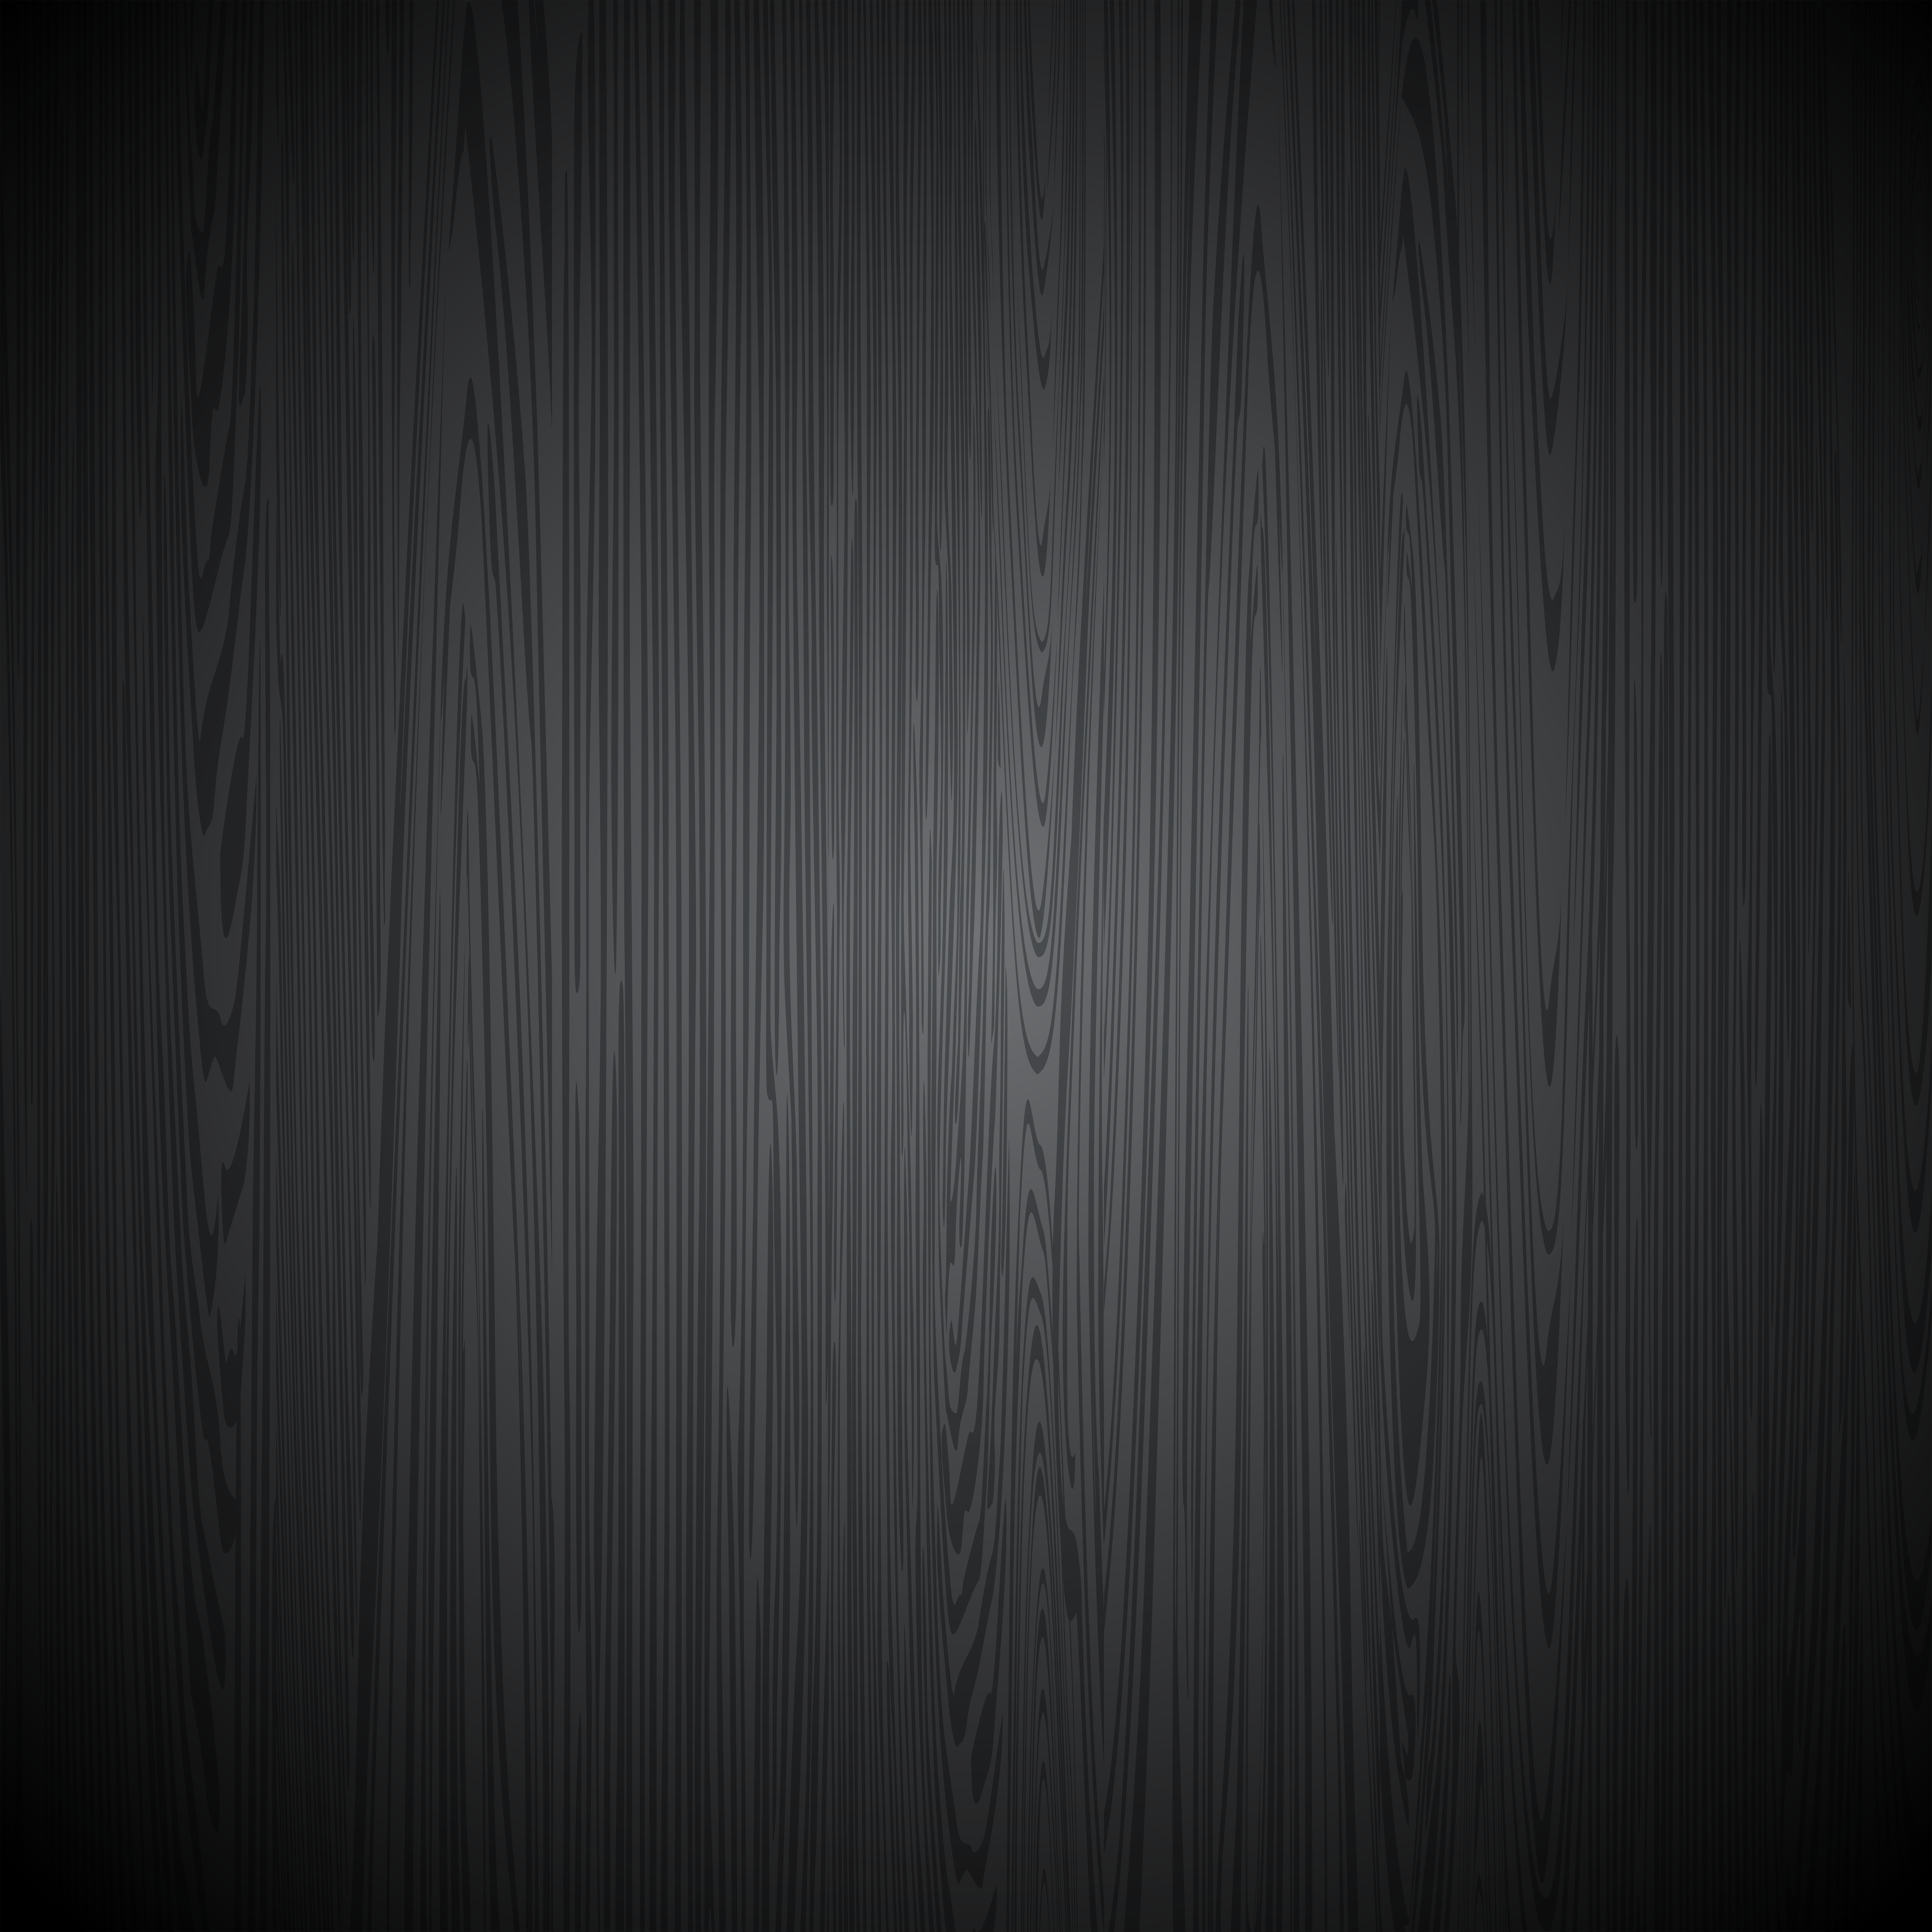 Nền gỗ đen là một lựa chọn độc đáo cho phong cách hiện đại và cá tính. Để cảm nhận được sự trường tồn và sự sang trọng của màu đen, hãy đến và xem bức tranh đầy màu sắc được tô điểm bởi nền gỗ đen, sẽ làm bạn bị cuốn hút và ám ảnh bởi sự độc đáo mà nó mang lại.